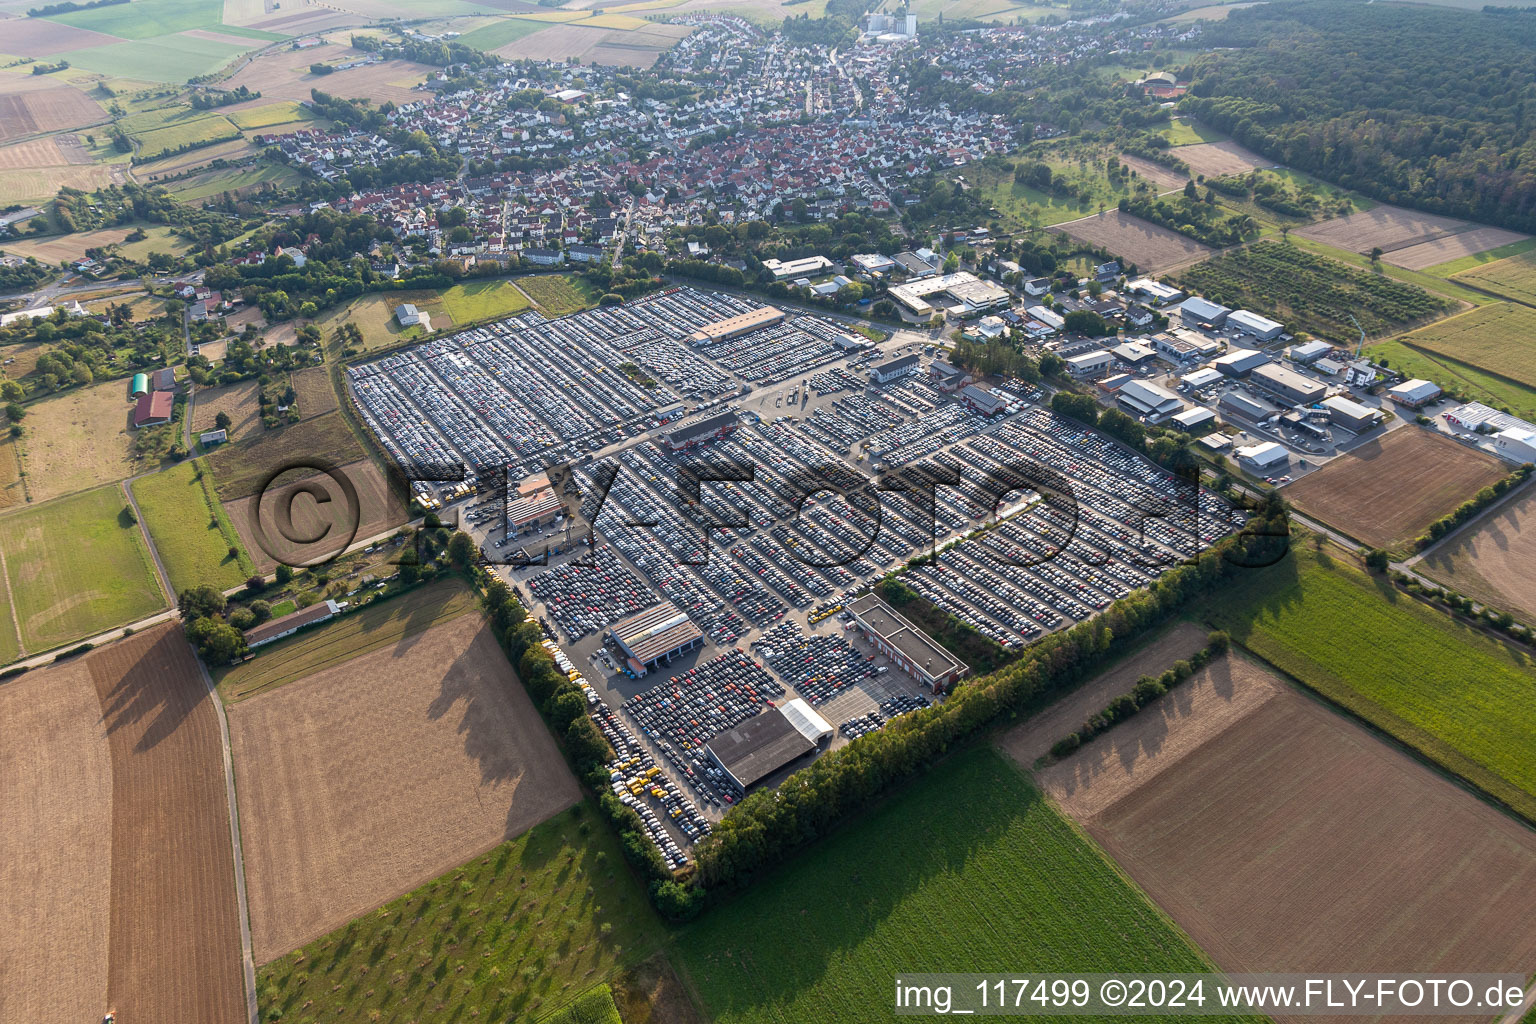 Vue aérienne de Place de parking et zone de stockage pour automobiles - voitures de la société AUTOKONTOR BAYERN GmbH dans le quartier de Kilianstädten à Schöneck dans le département Hesse, Allemagne